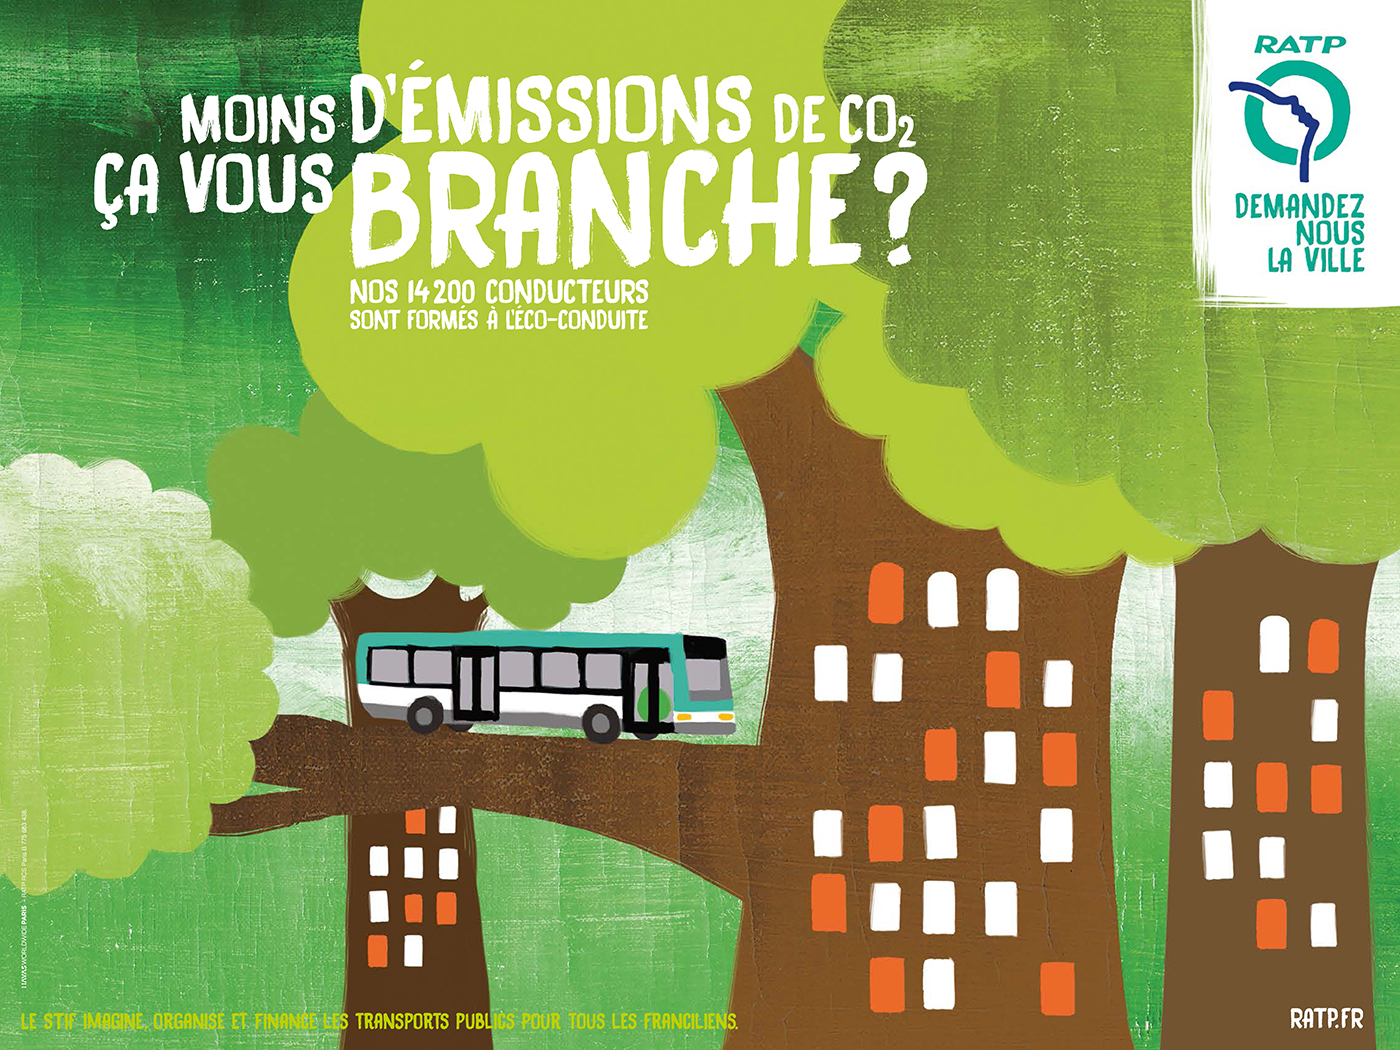 ratp-publicite-affichage-environnement-COP21-STIF-franciliens-demandez-nous-la-ville-agence-havas-paris-4